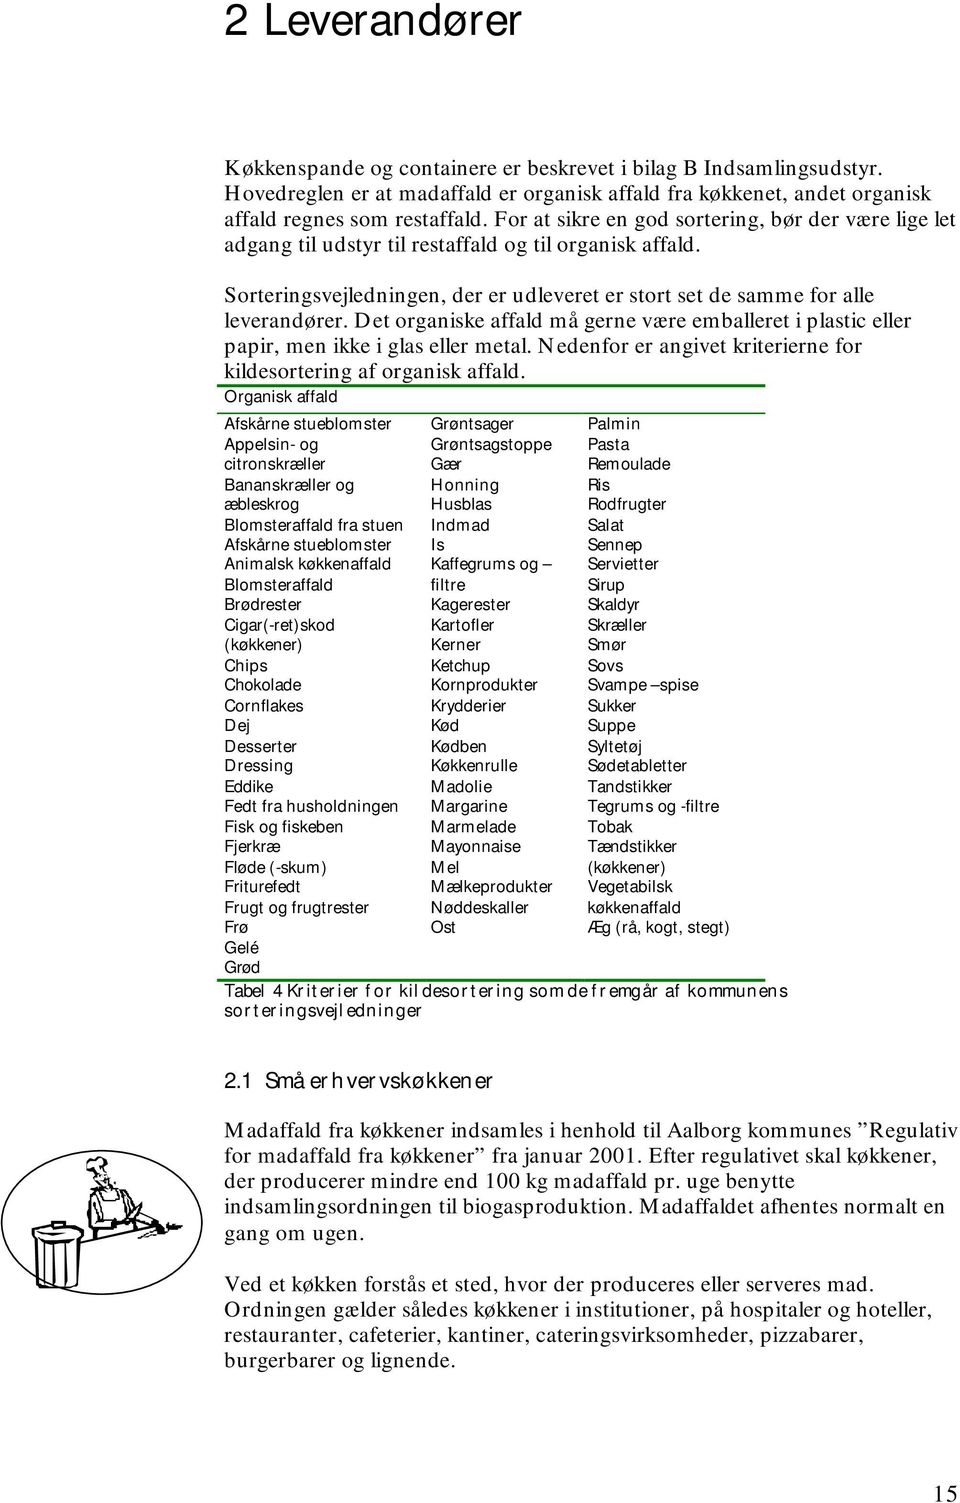 Indsamling af organisk affald fra husholdninger, små erhvervskøkkener og  fødevareforretninger i Aalborg kommune - PDF Gratis download